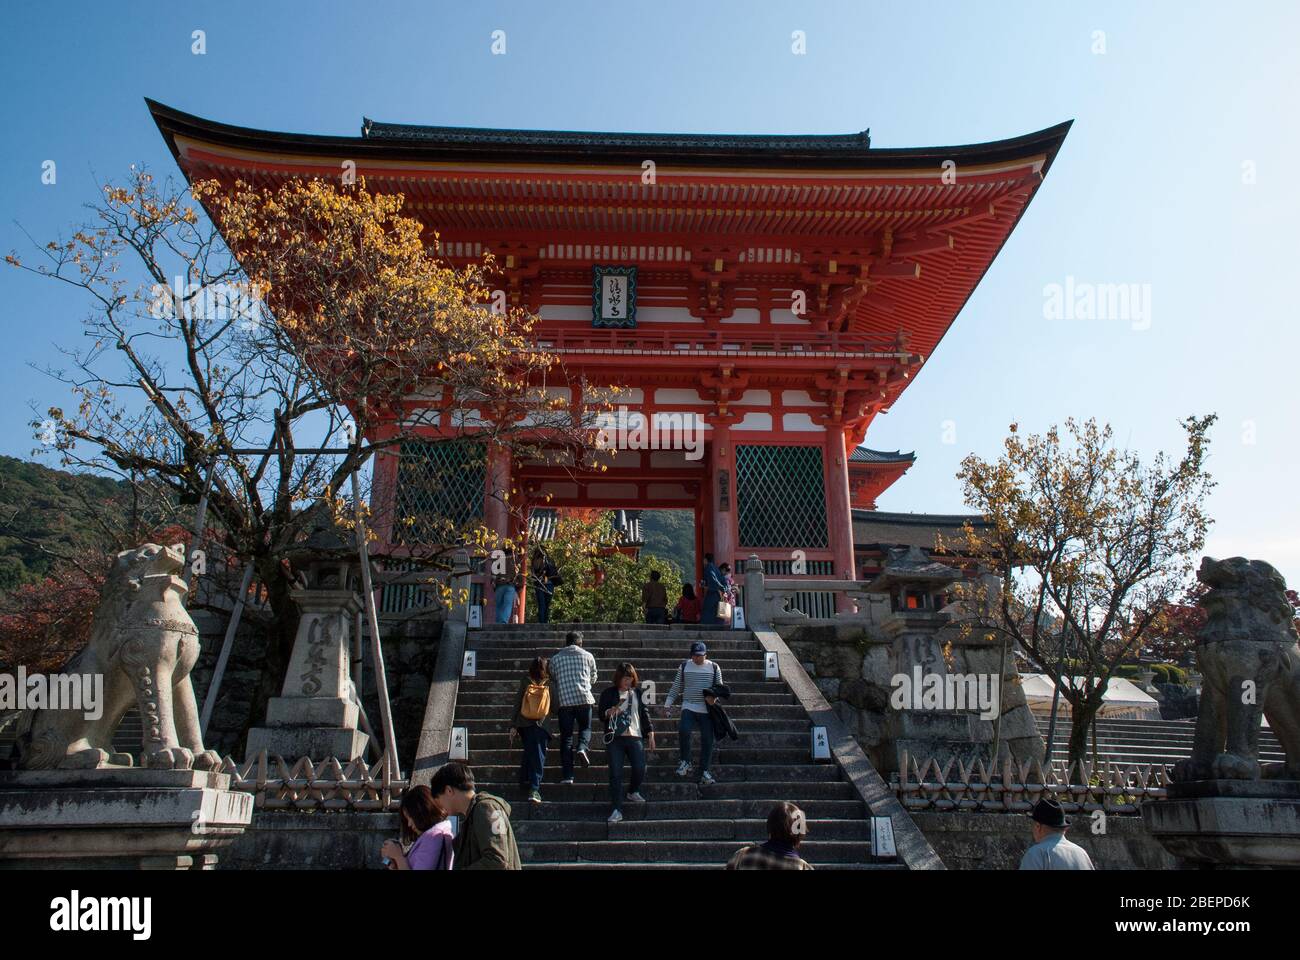 Kiyomizu-dera Temple, 1-294 Kiyomizu, Higashiyama-ku, Kyoto, Japan Stock Photo